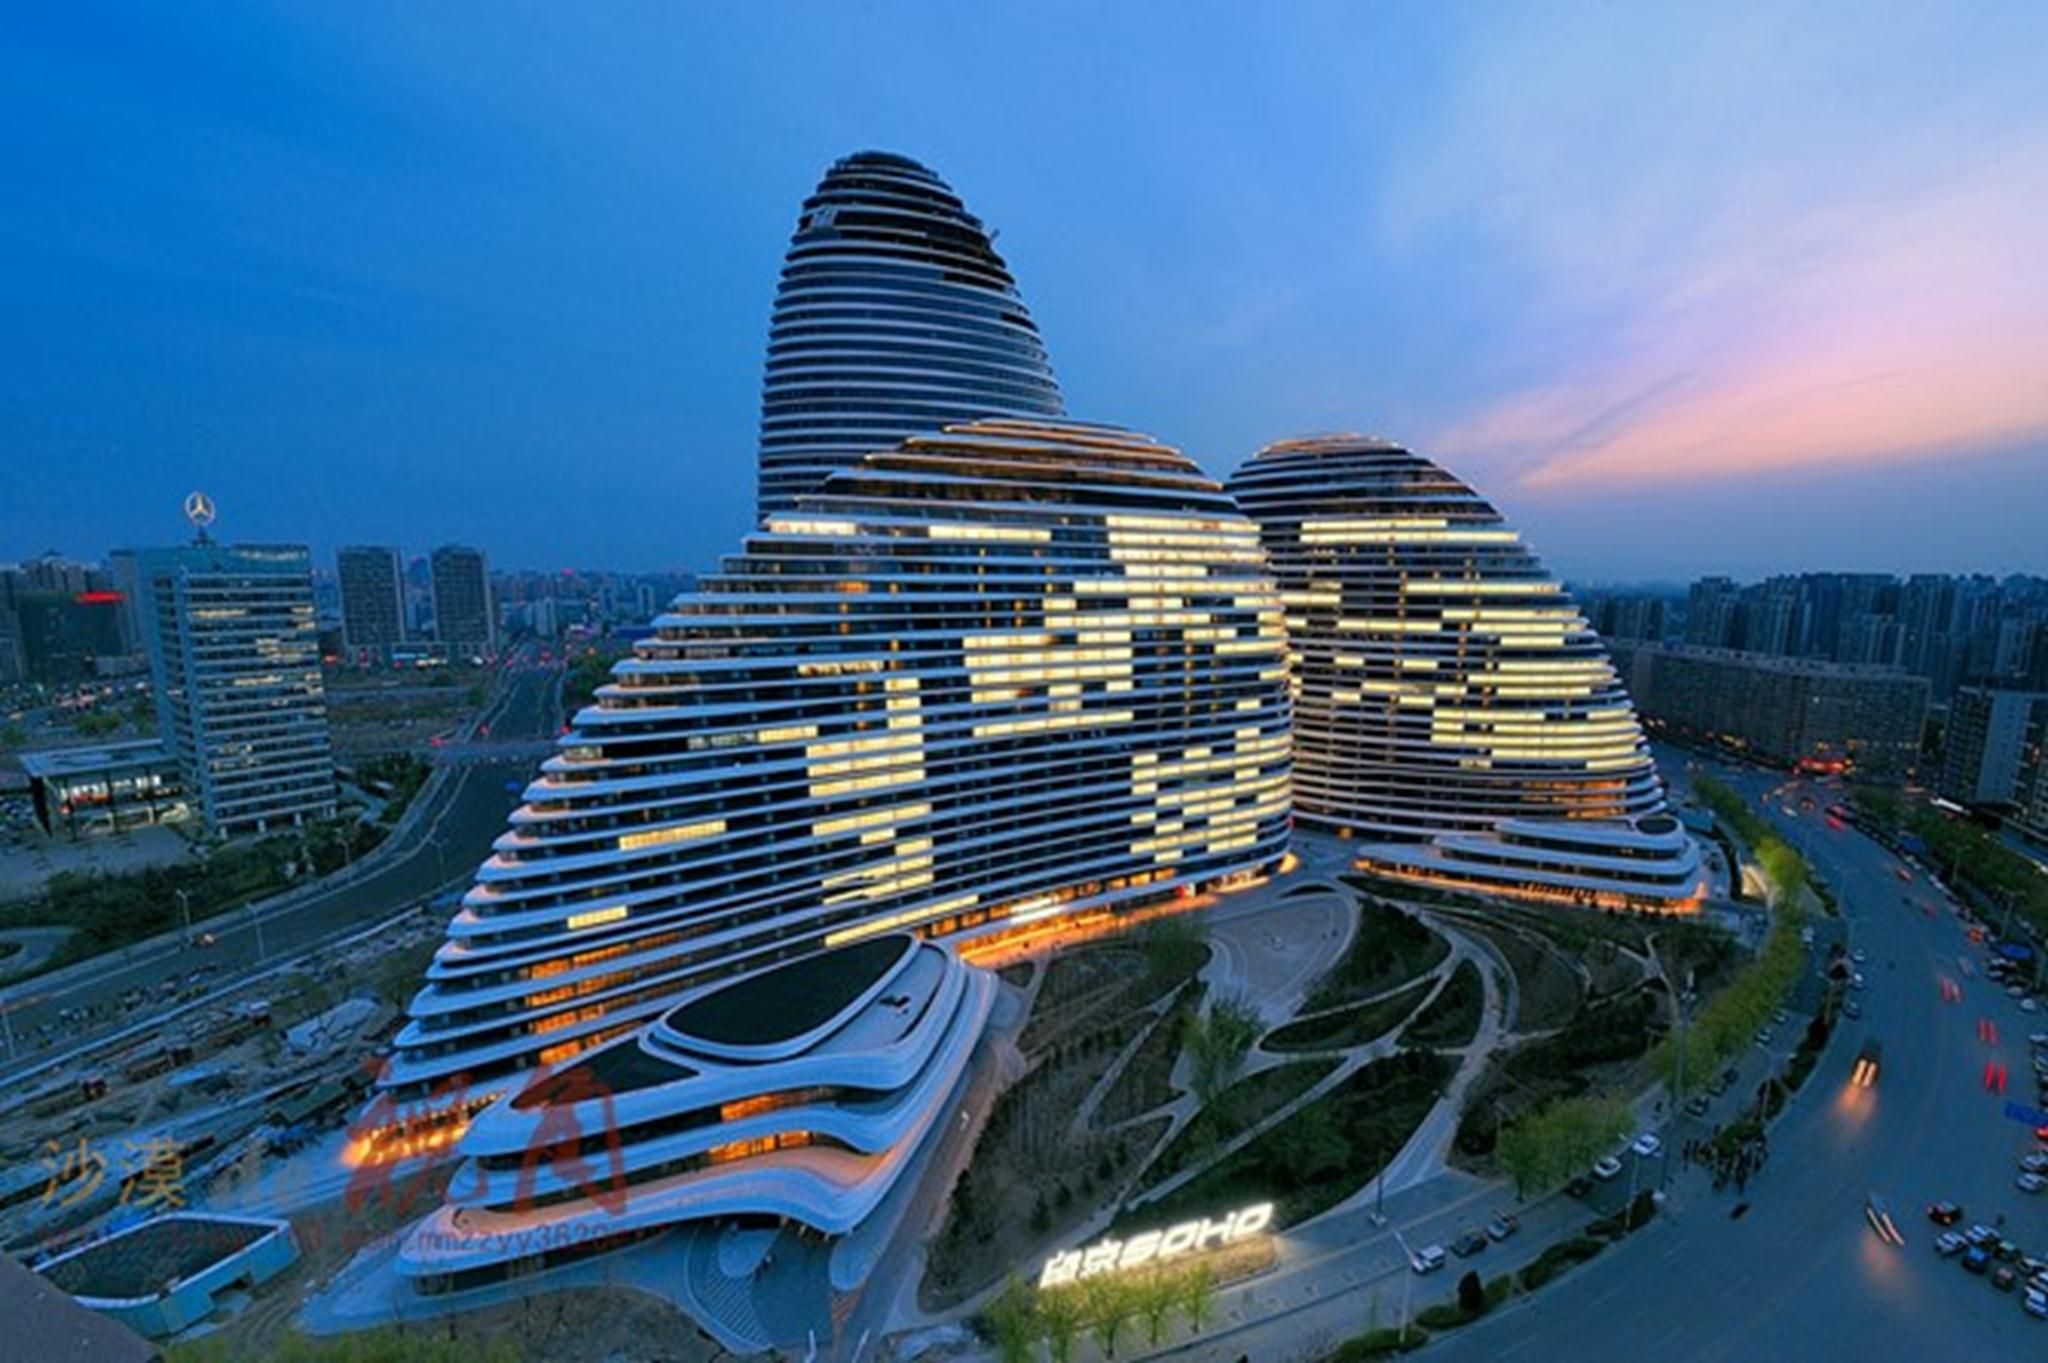 Địa điểm: Bắc Kinh, Trung Quốc. Kiến trúc sư: Zaha Hadid Architects